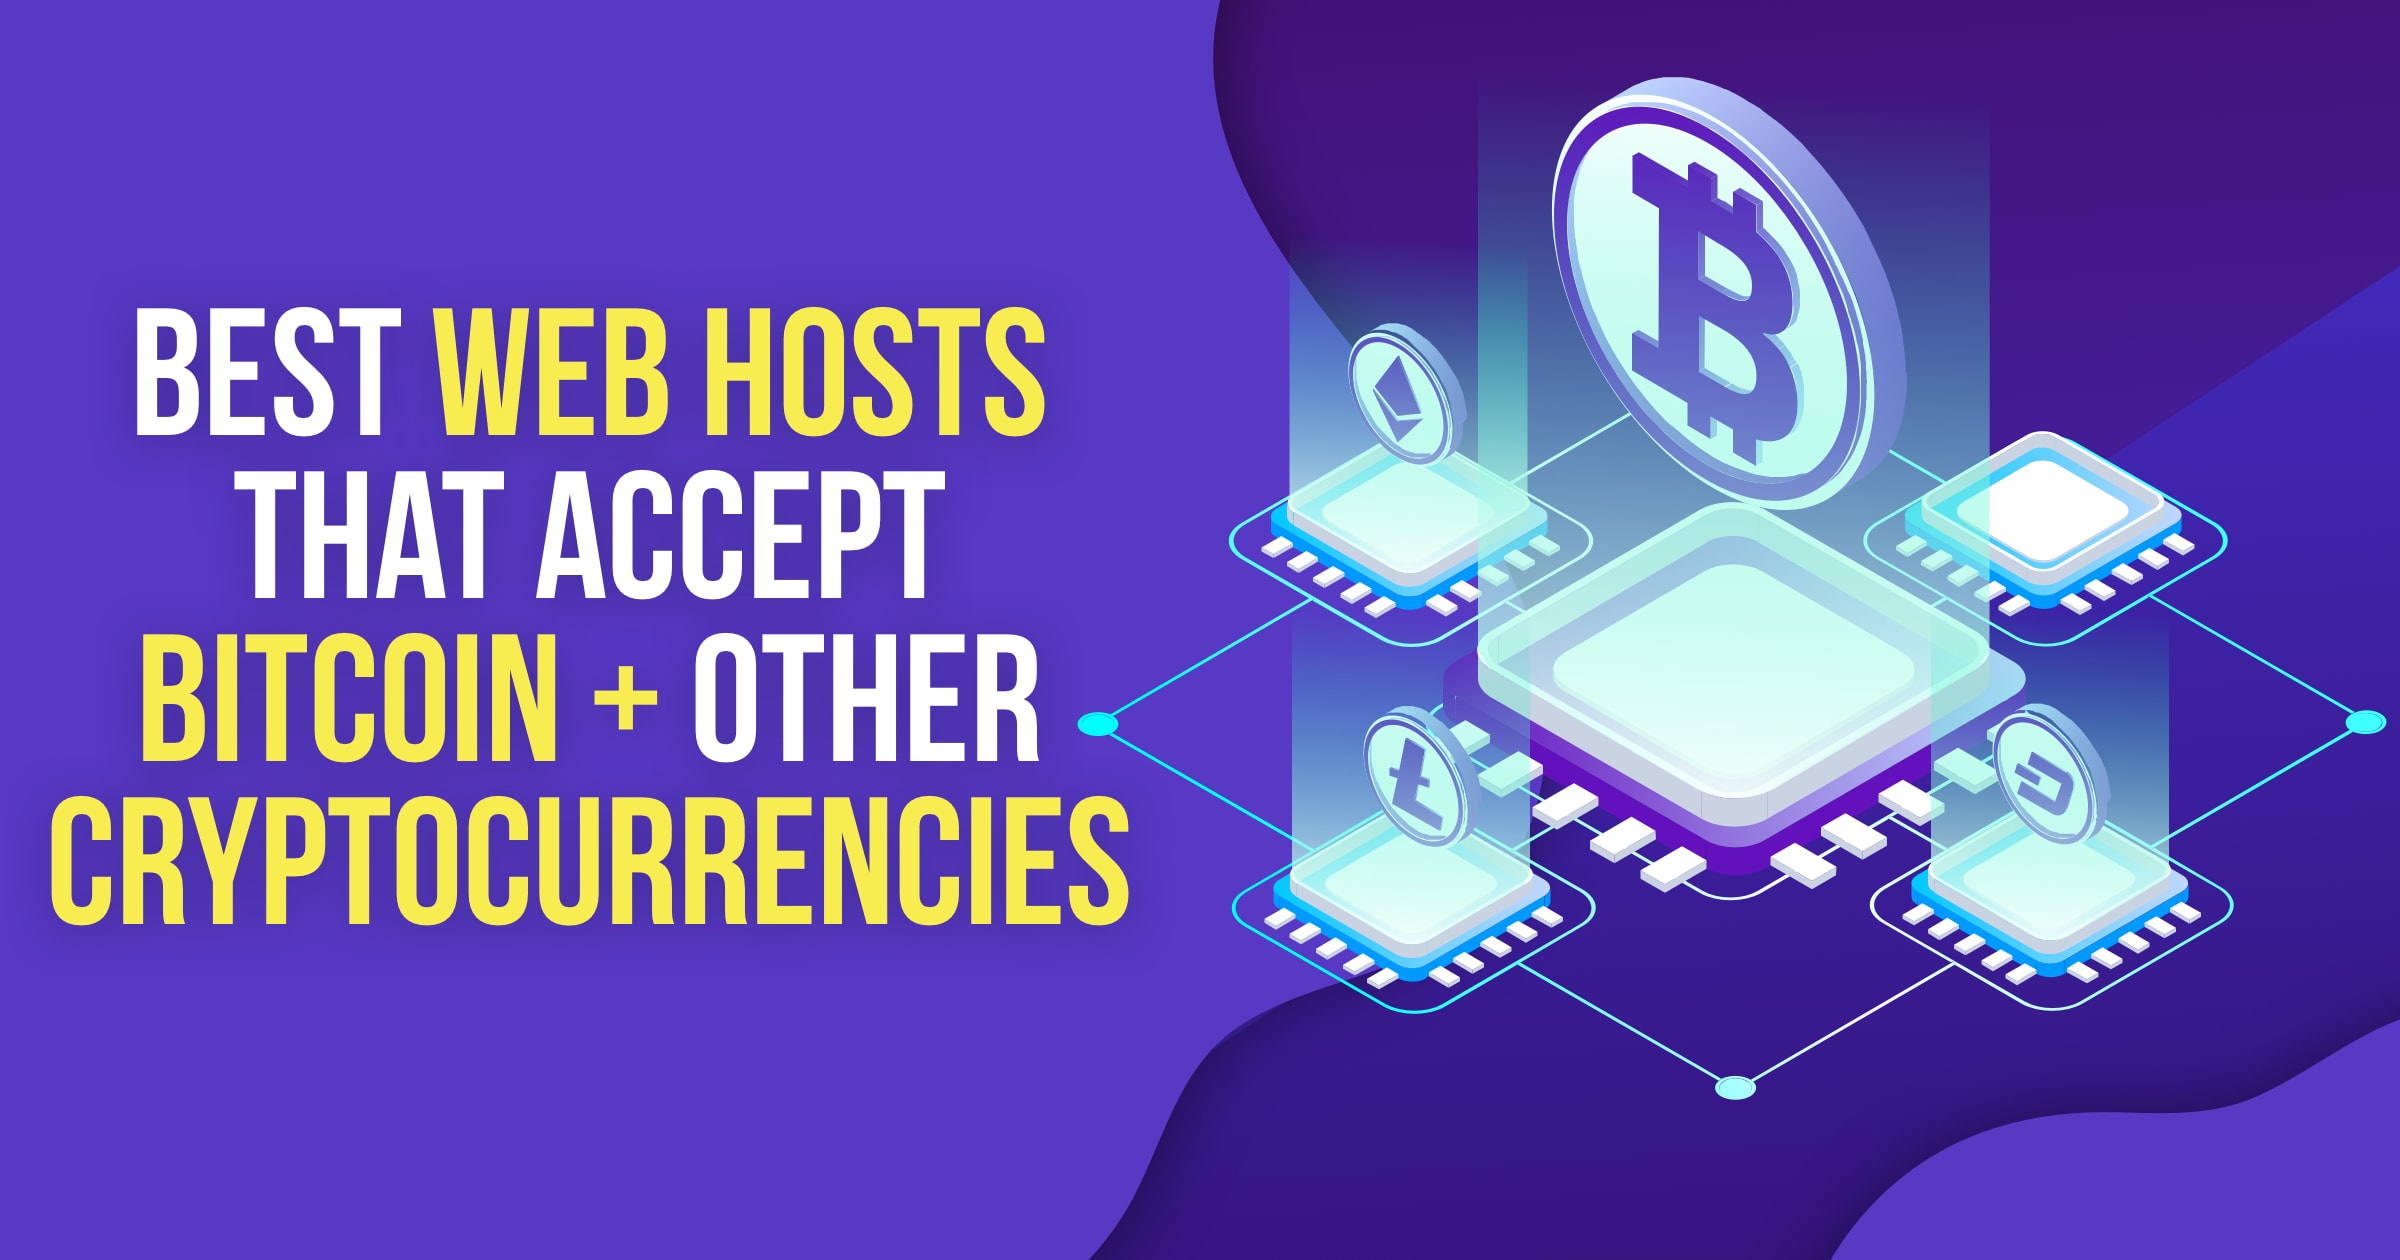 Naviga nei siti decentralizzati su Chrome con questa estensione - Best Web Hosts that Accept Bitcoin Other Cryptocurrencies